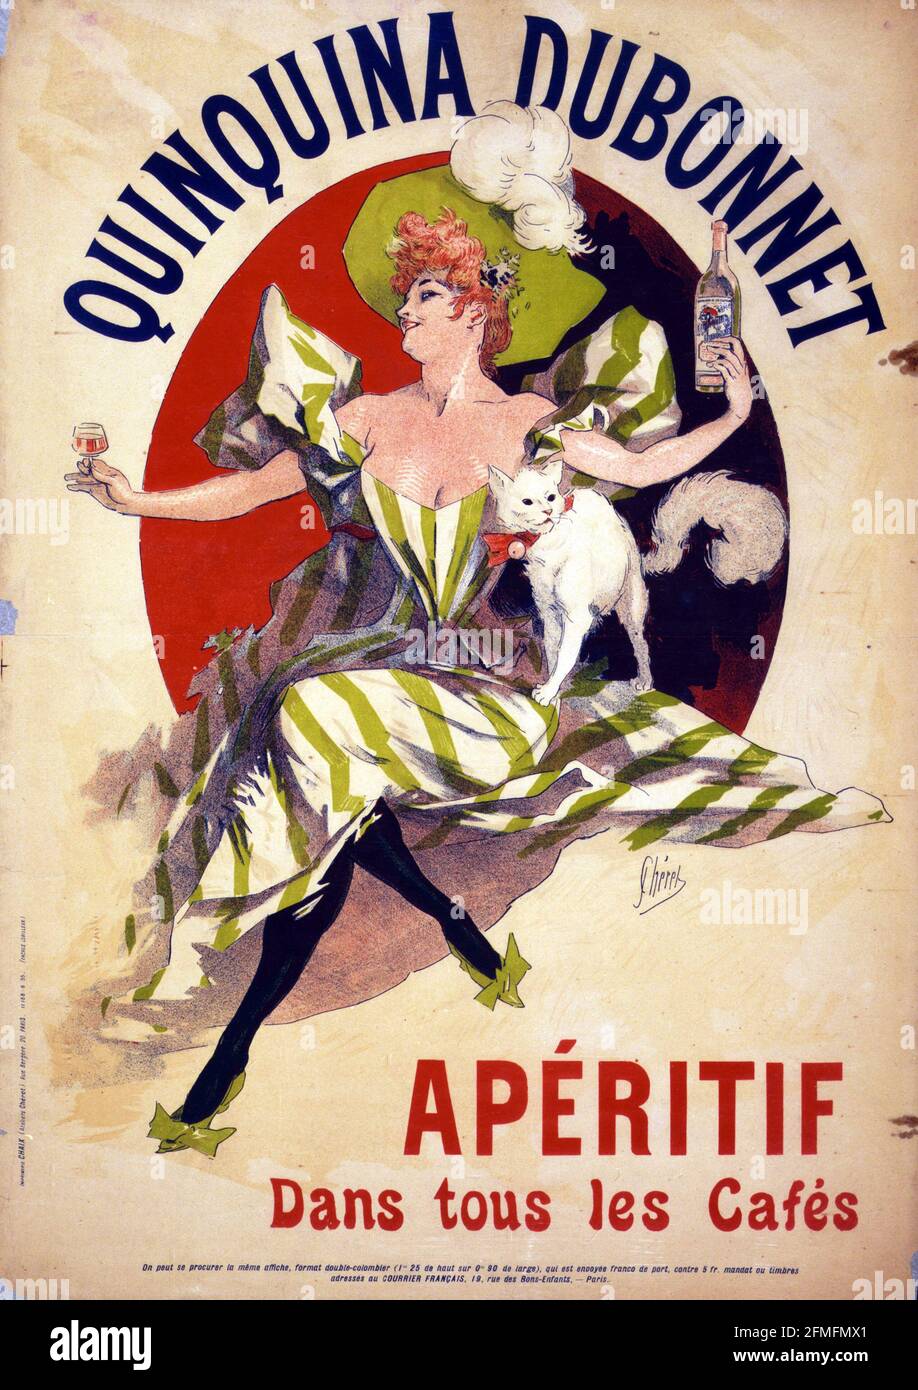 Quinquina Dubonnet Aperitif dans tous les Cafés - Jules Chéret. 1895. Belle-époque-Poster. Stockfoto